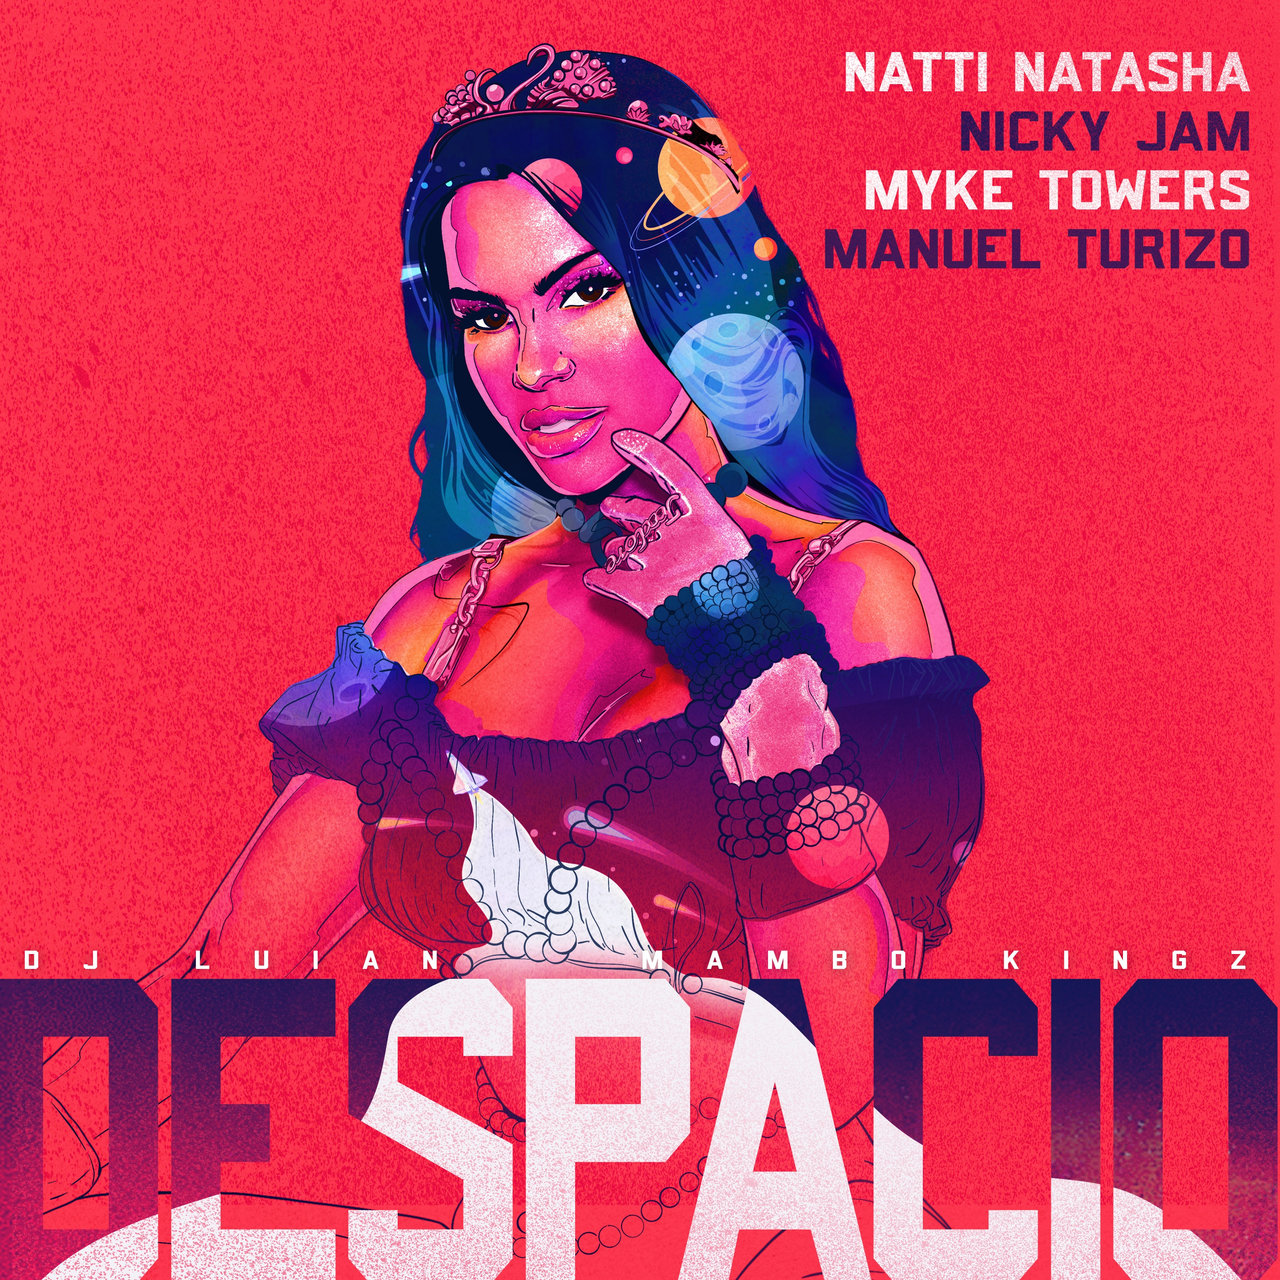 Natti Natasha, Nicky Jam, Myke Towers, & Manuel Turizo featuring DJ Luian & Mambo Kingz — Despacio cover artwork